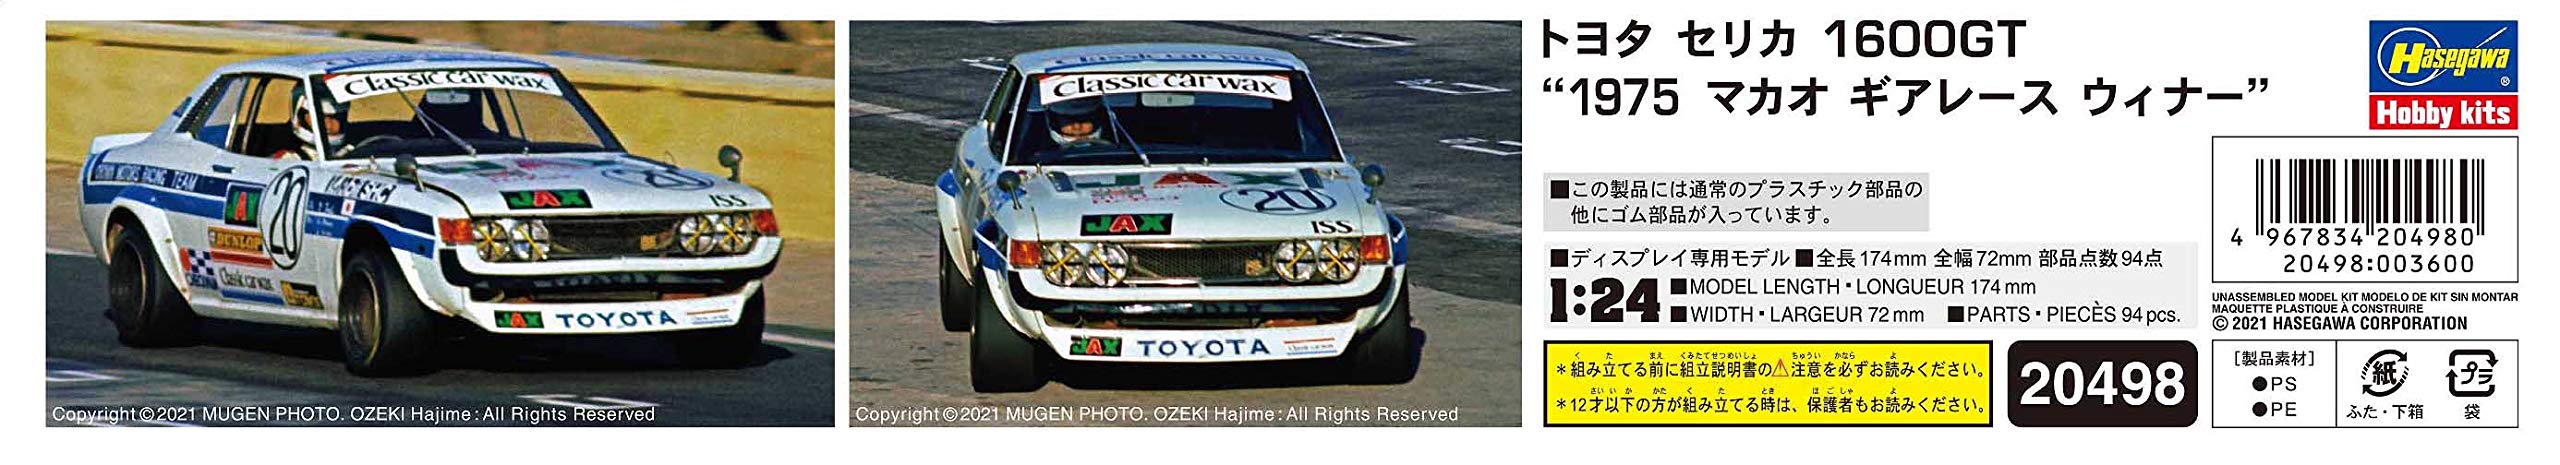 HASEGAWA 1/24 Toyota Celica 1600Gt 1975 Macau Gear Race Winner Modèle en plastique